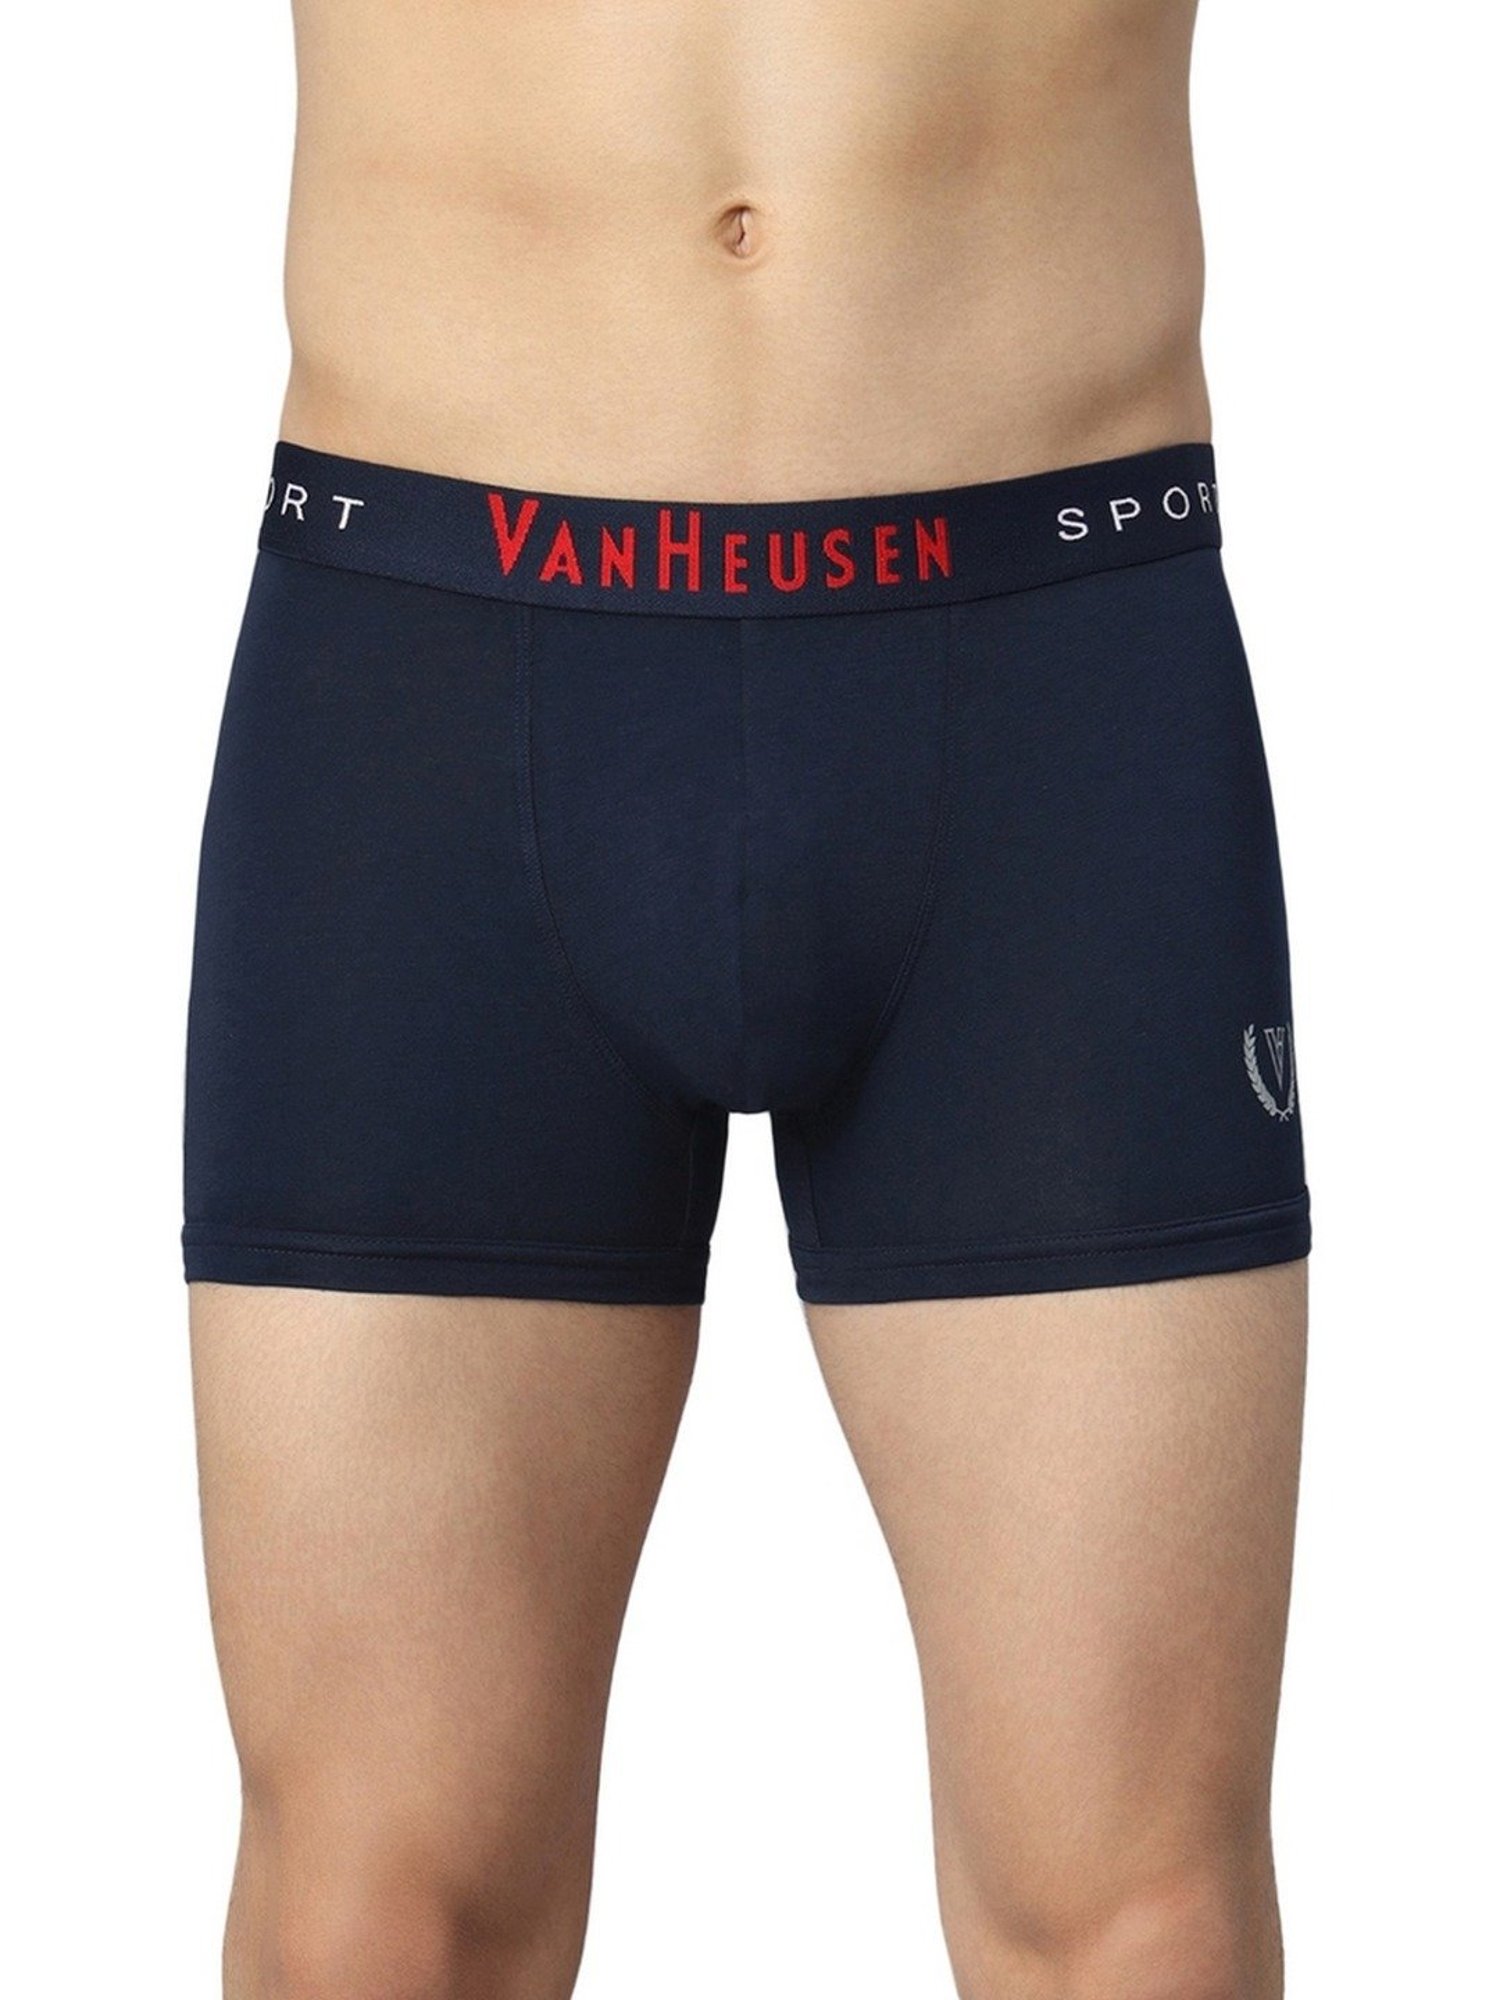 Shop men's trunks  Van heusen, XYXX & more